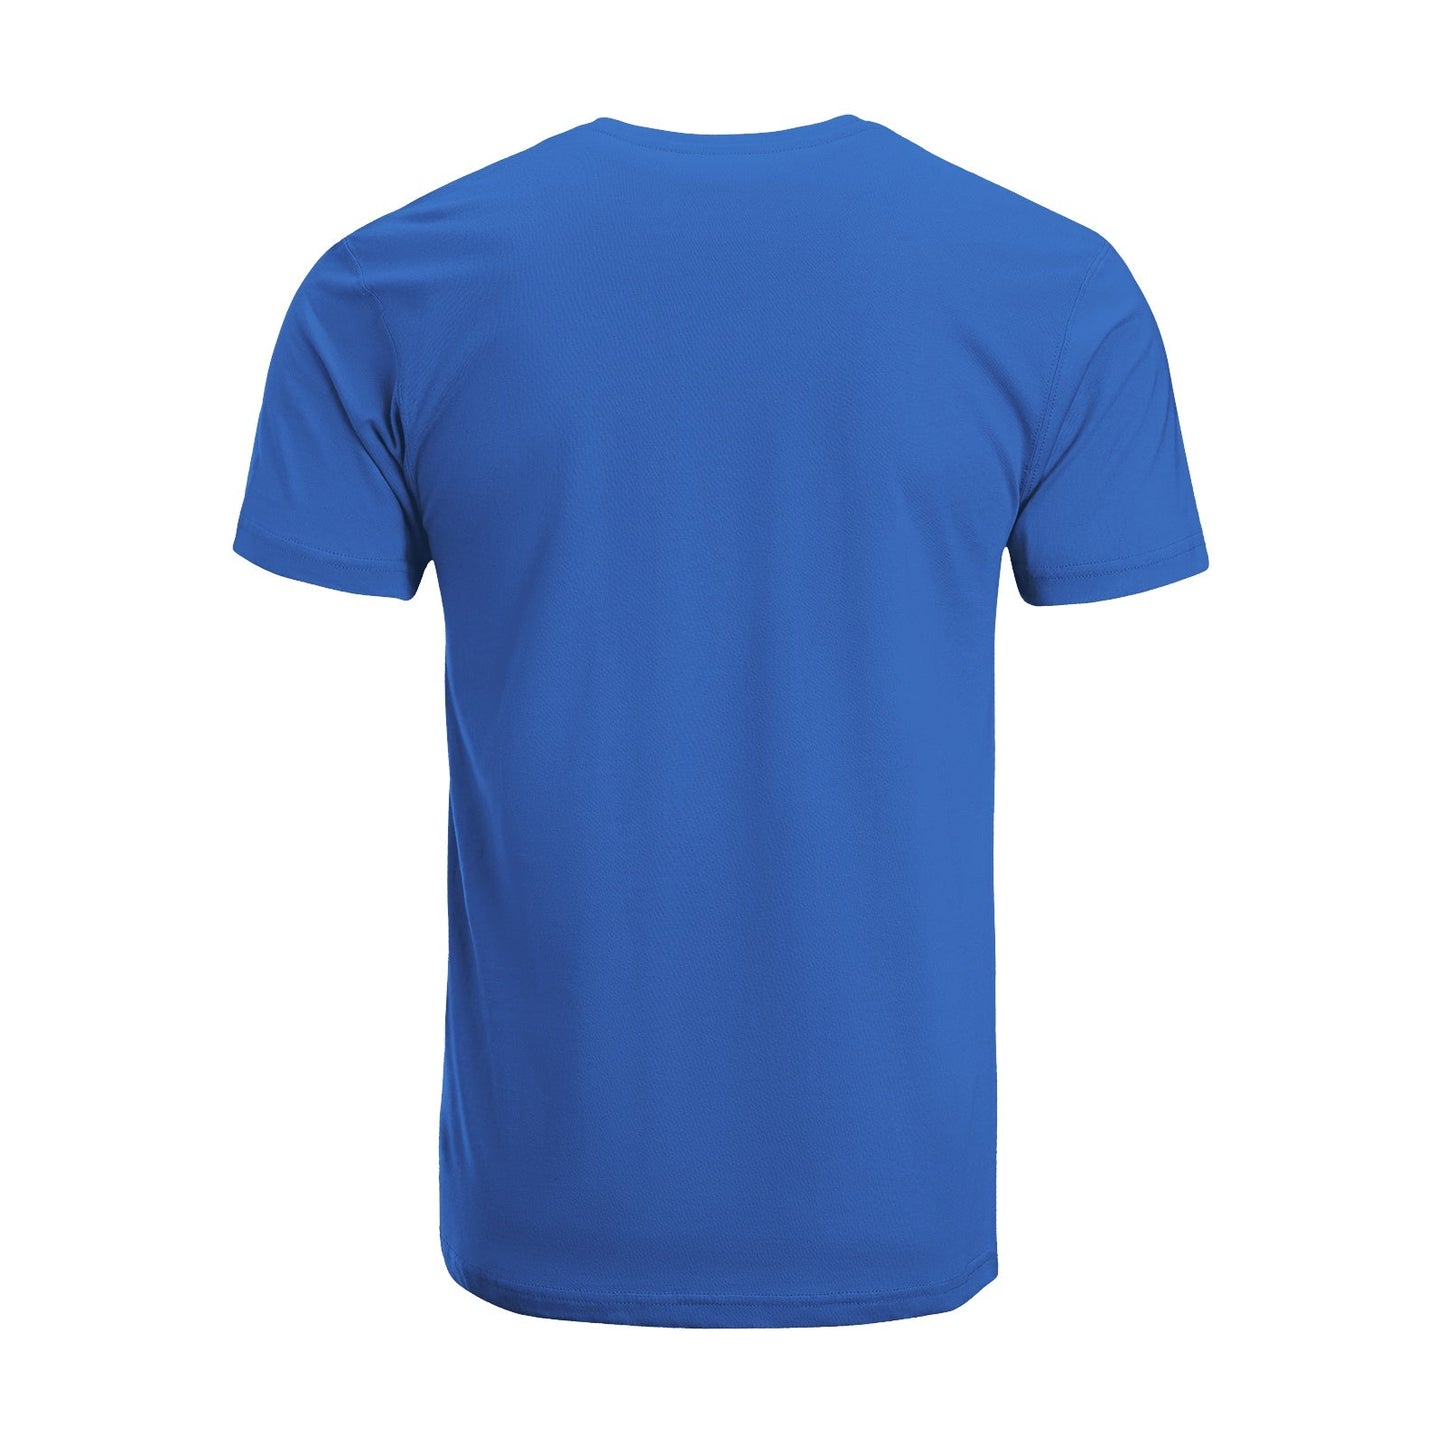 Unisex Short Sleeve Crew Neck Cotton Jersey T-Shirt TRUCK 22